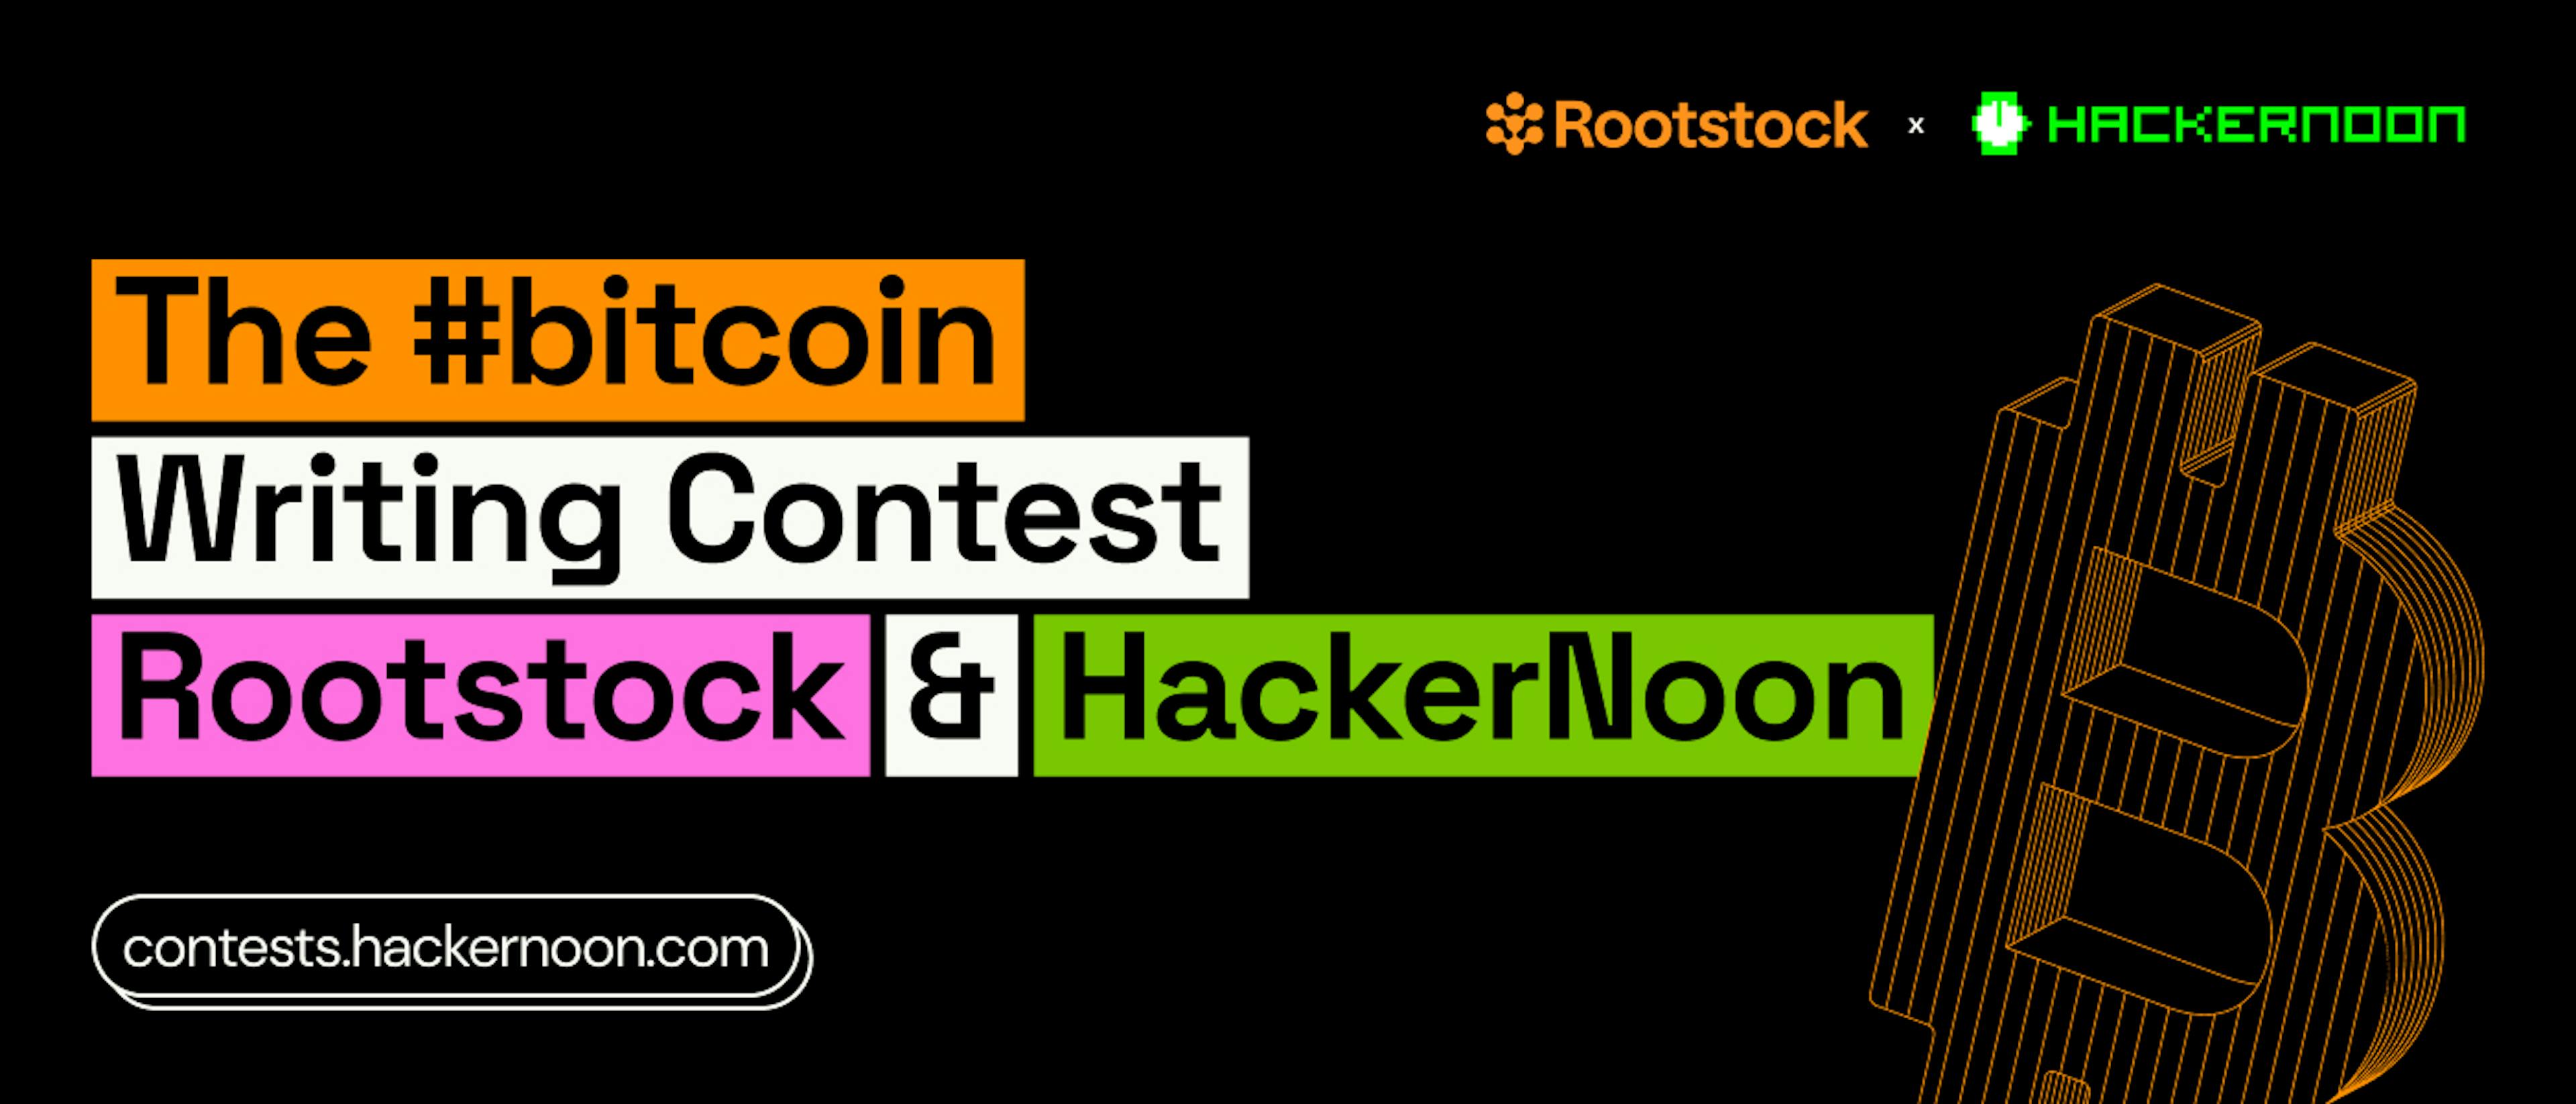 featured image - Únase al concurso de escritura #bitcoin de Rootstock y HackerNoon, gane su parte de $17,500